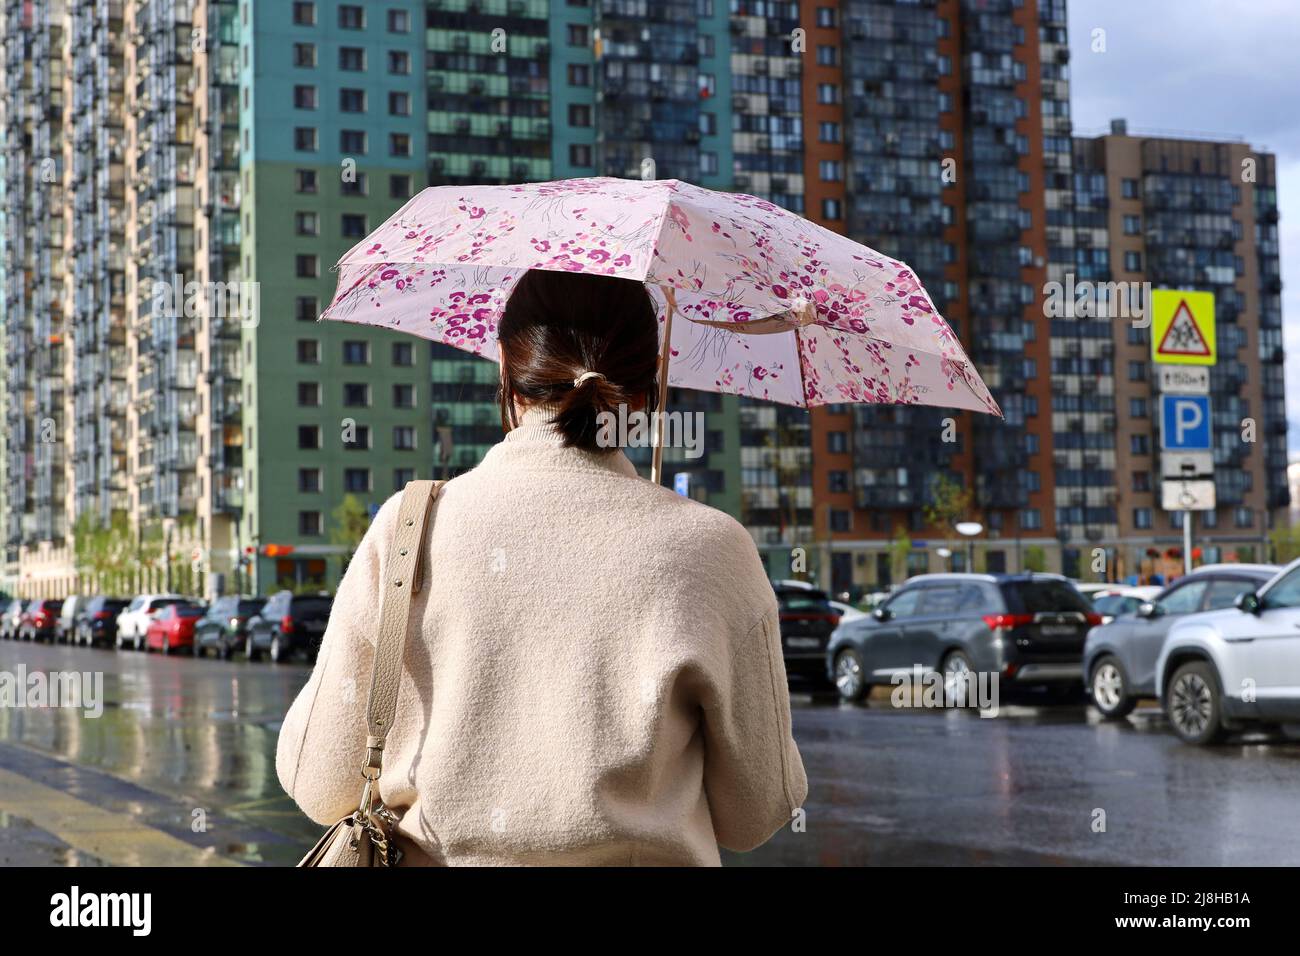 Regen in einer Stadt, Frau, die mit Regenschirm auf der Stadtstraße auf dem Hintergrund von Wohngebäuden und geparkten Autos steht Stockfoto